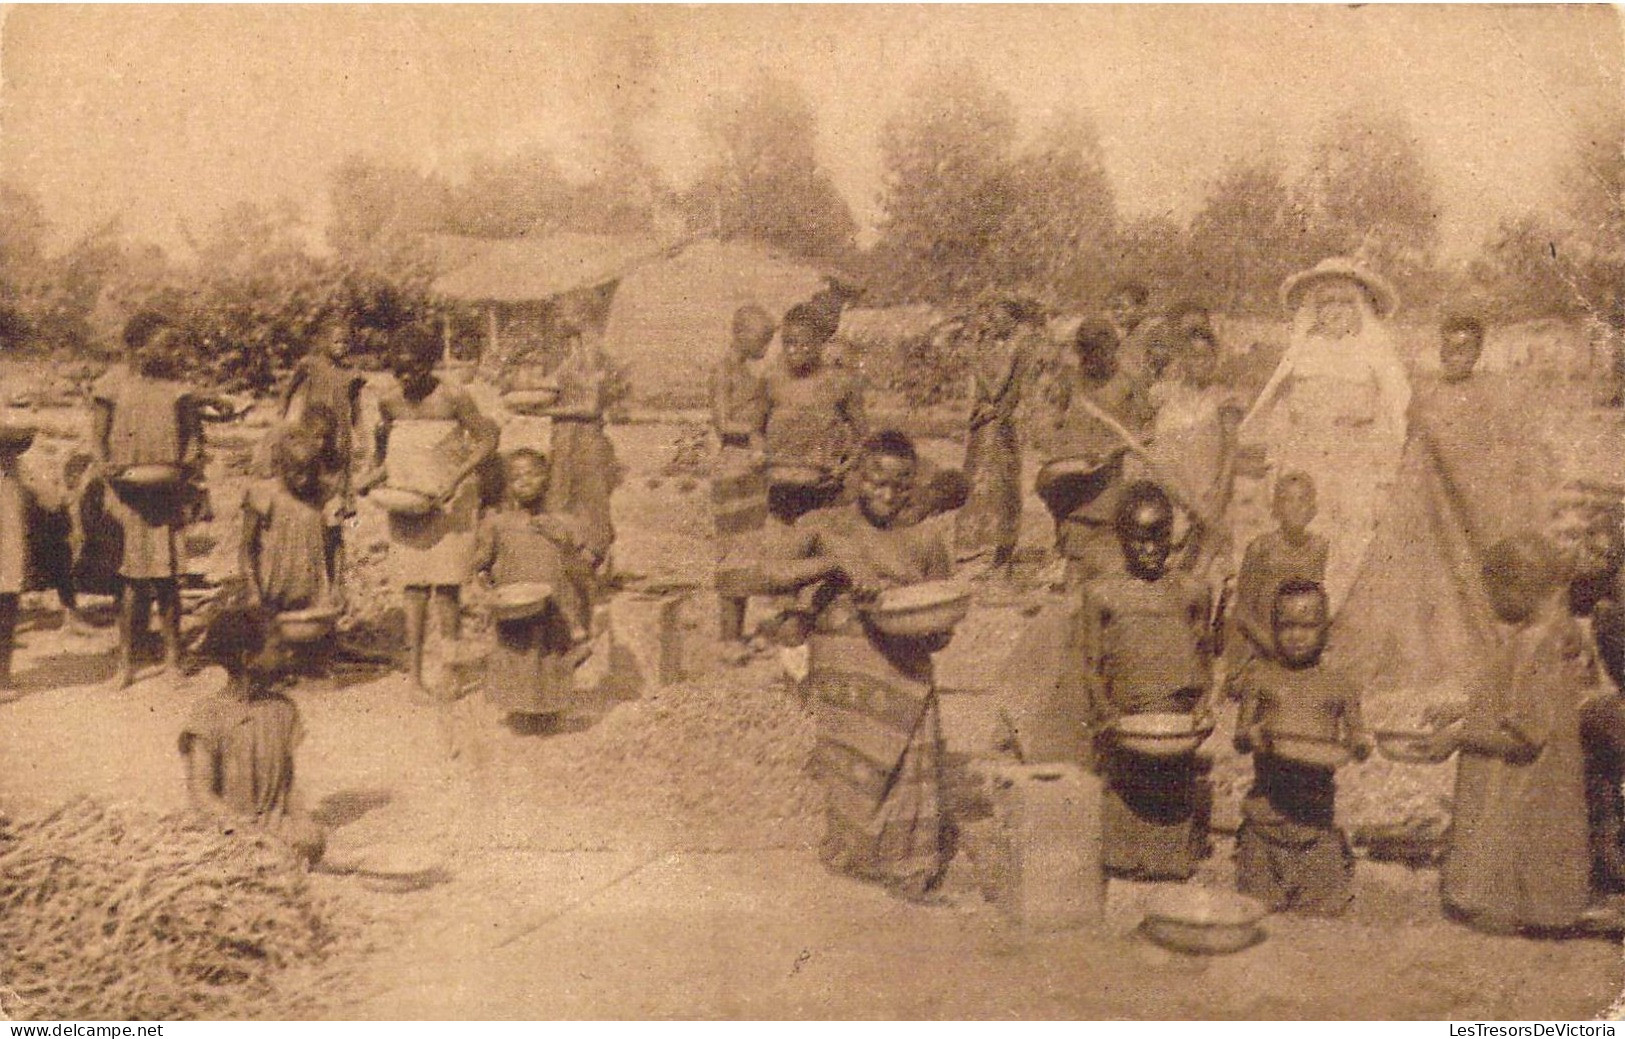 CONGO BELGE - Mission Des Sœurs De Ste-Marie De Namur - Leverville ( Kwango ) - Carte Postale Ancienne - Belgisch-Kongo